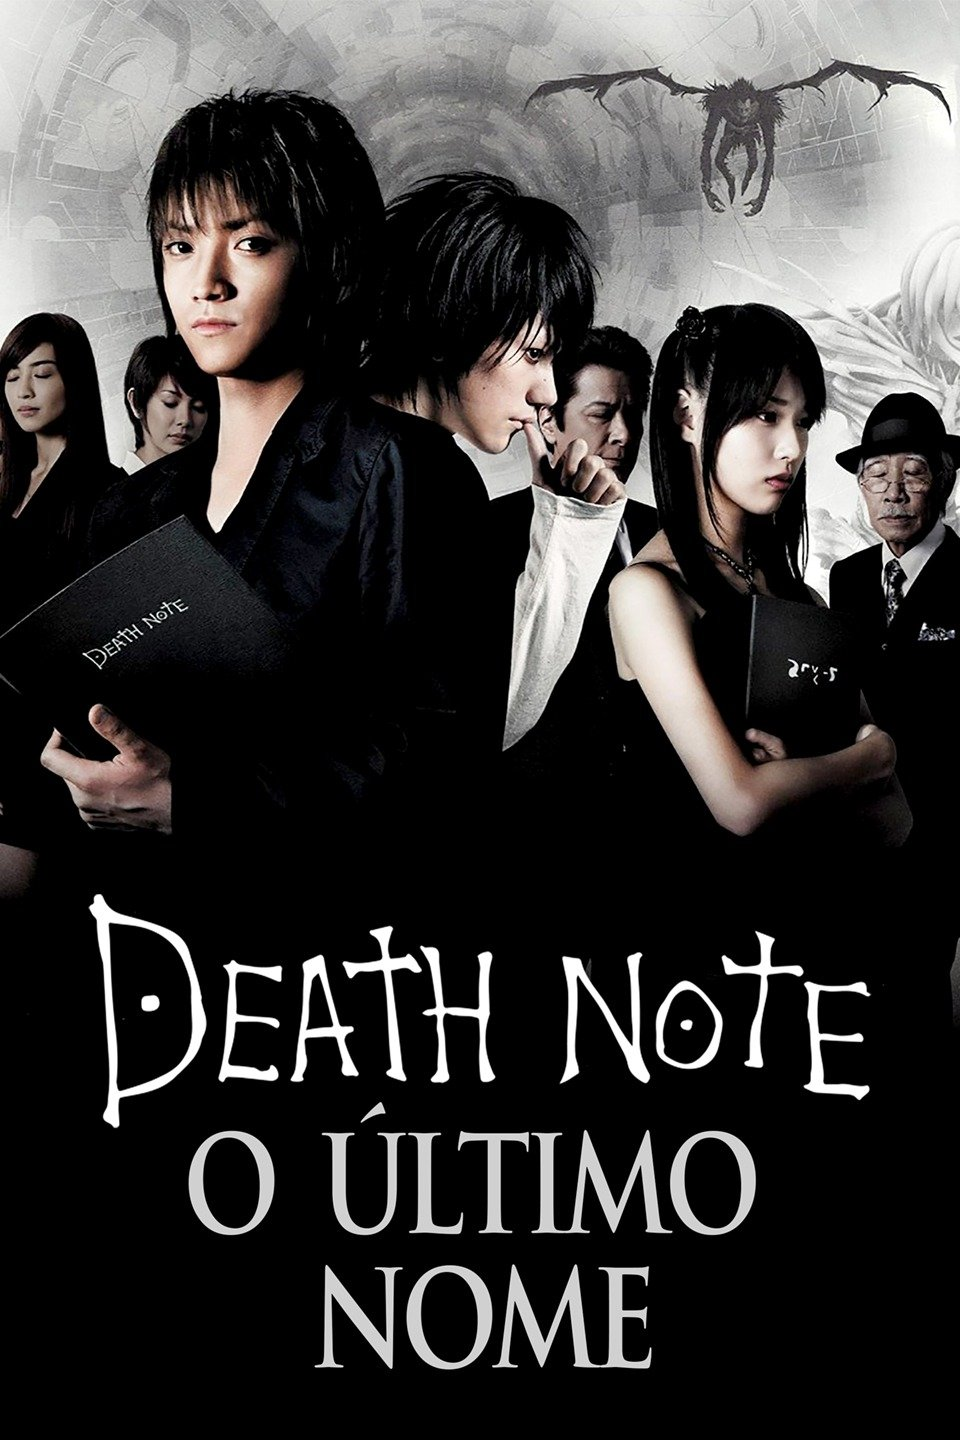 Death Note, Dublapédia